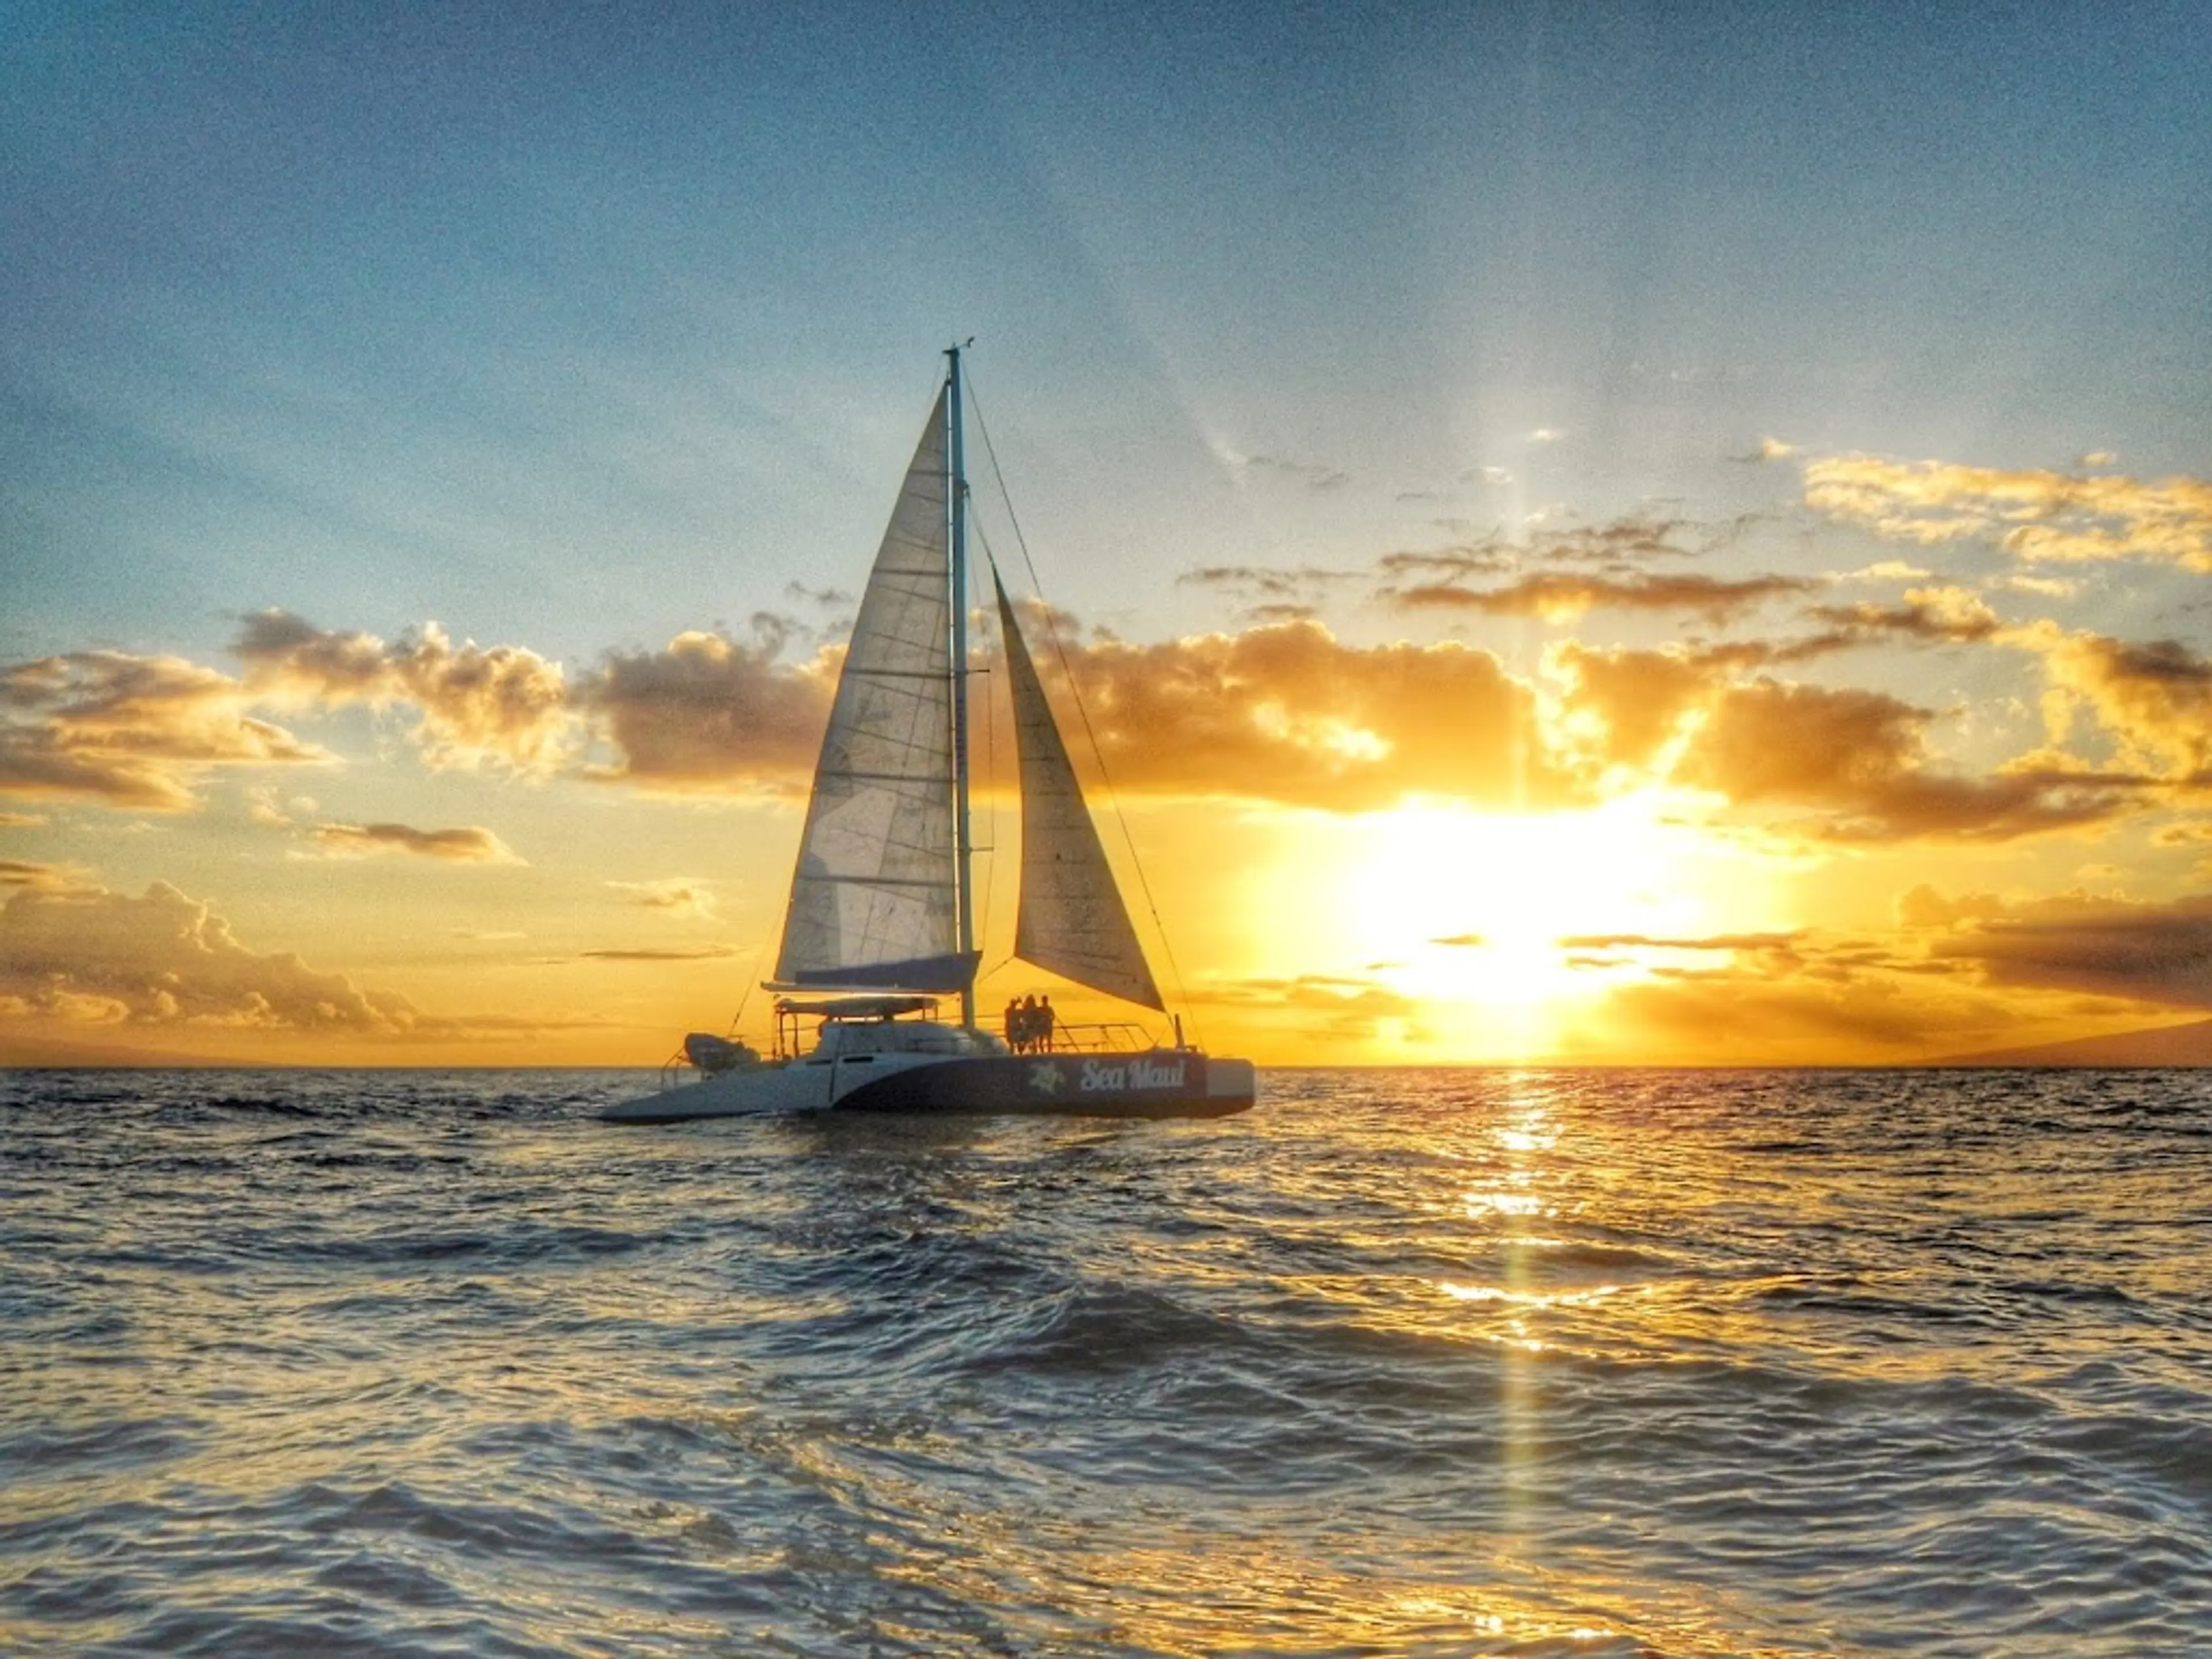 Sunset Cruise